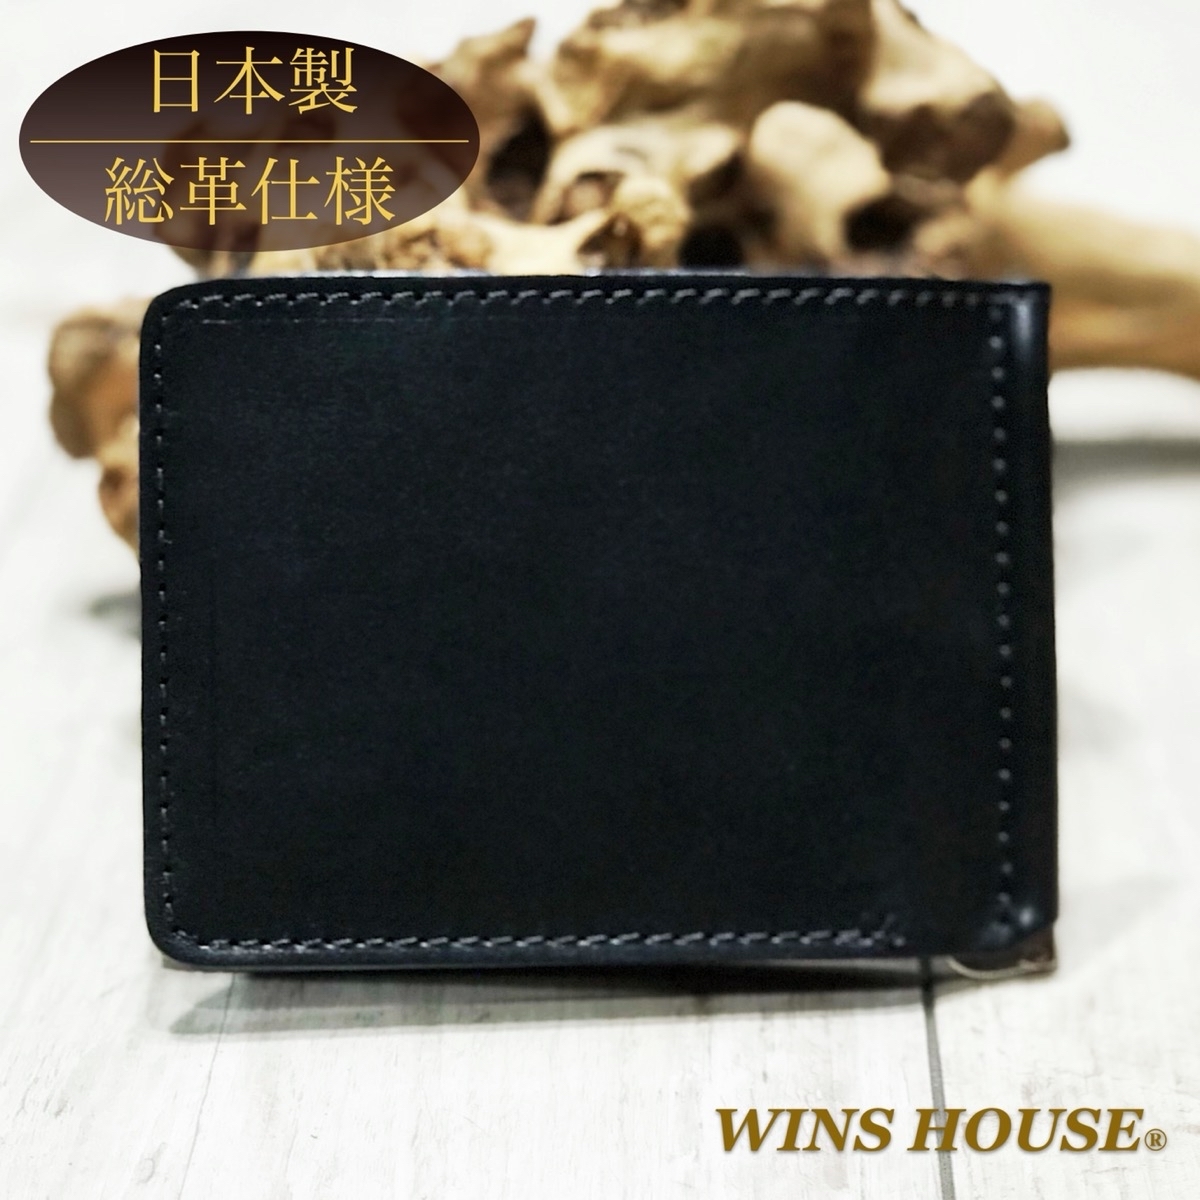 ウインズハウス (WINS HOUSE)、長財布、二つ折り財布・三つ折り財布の 